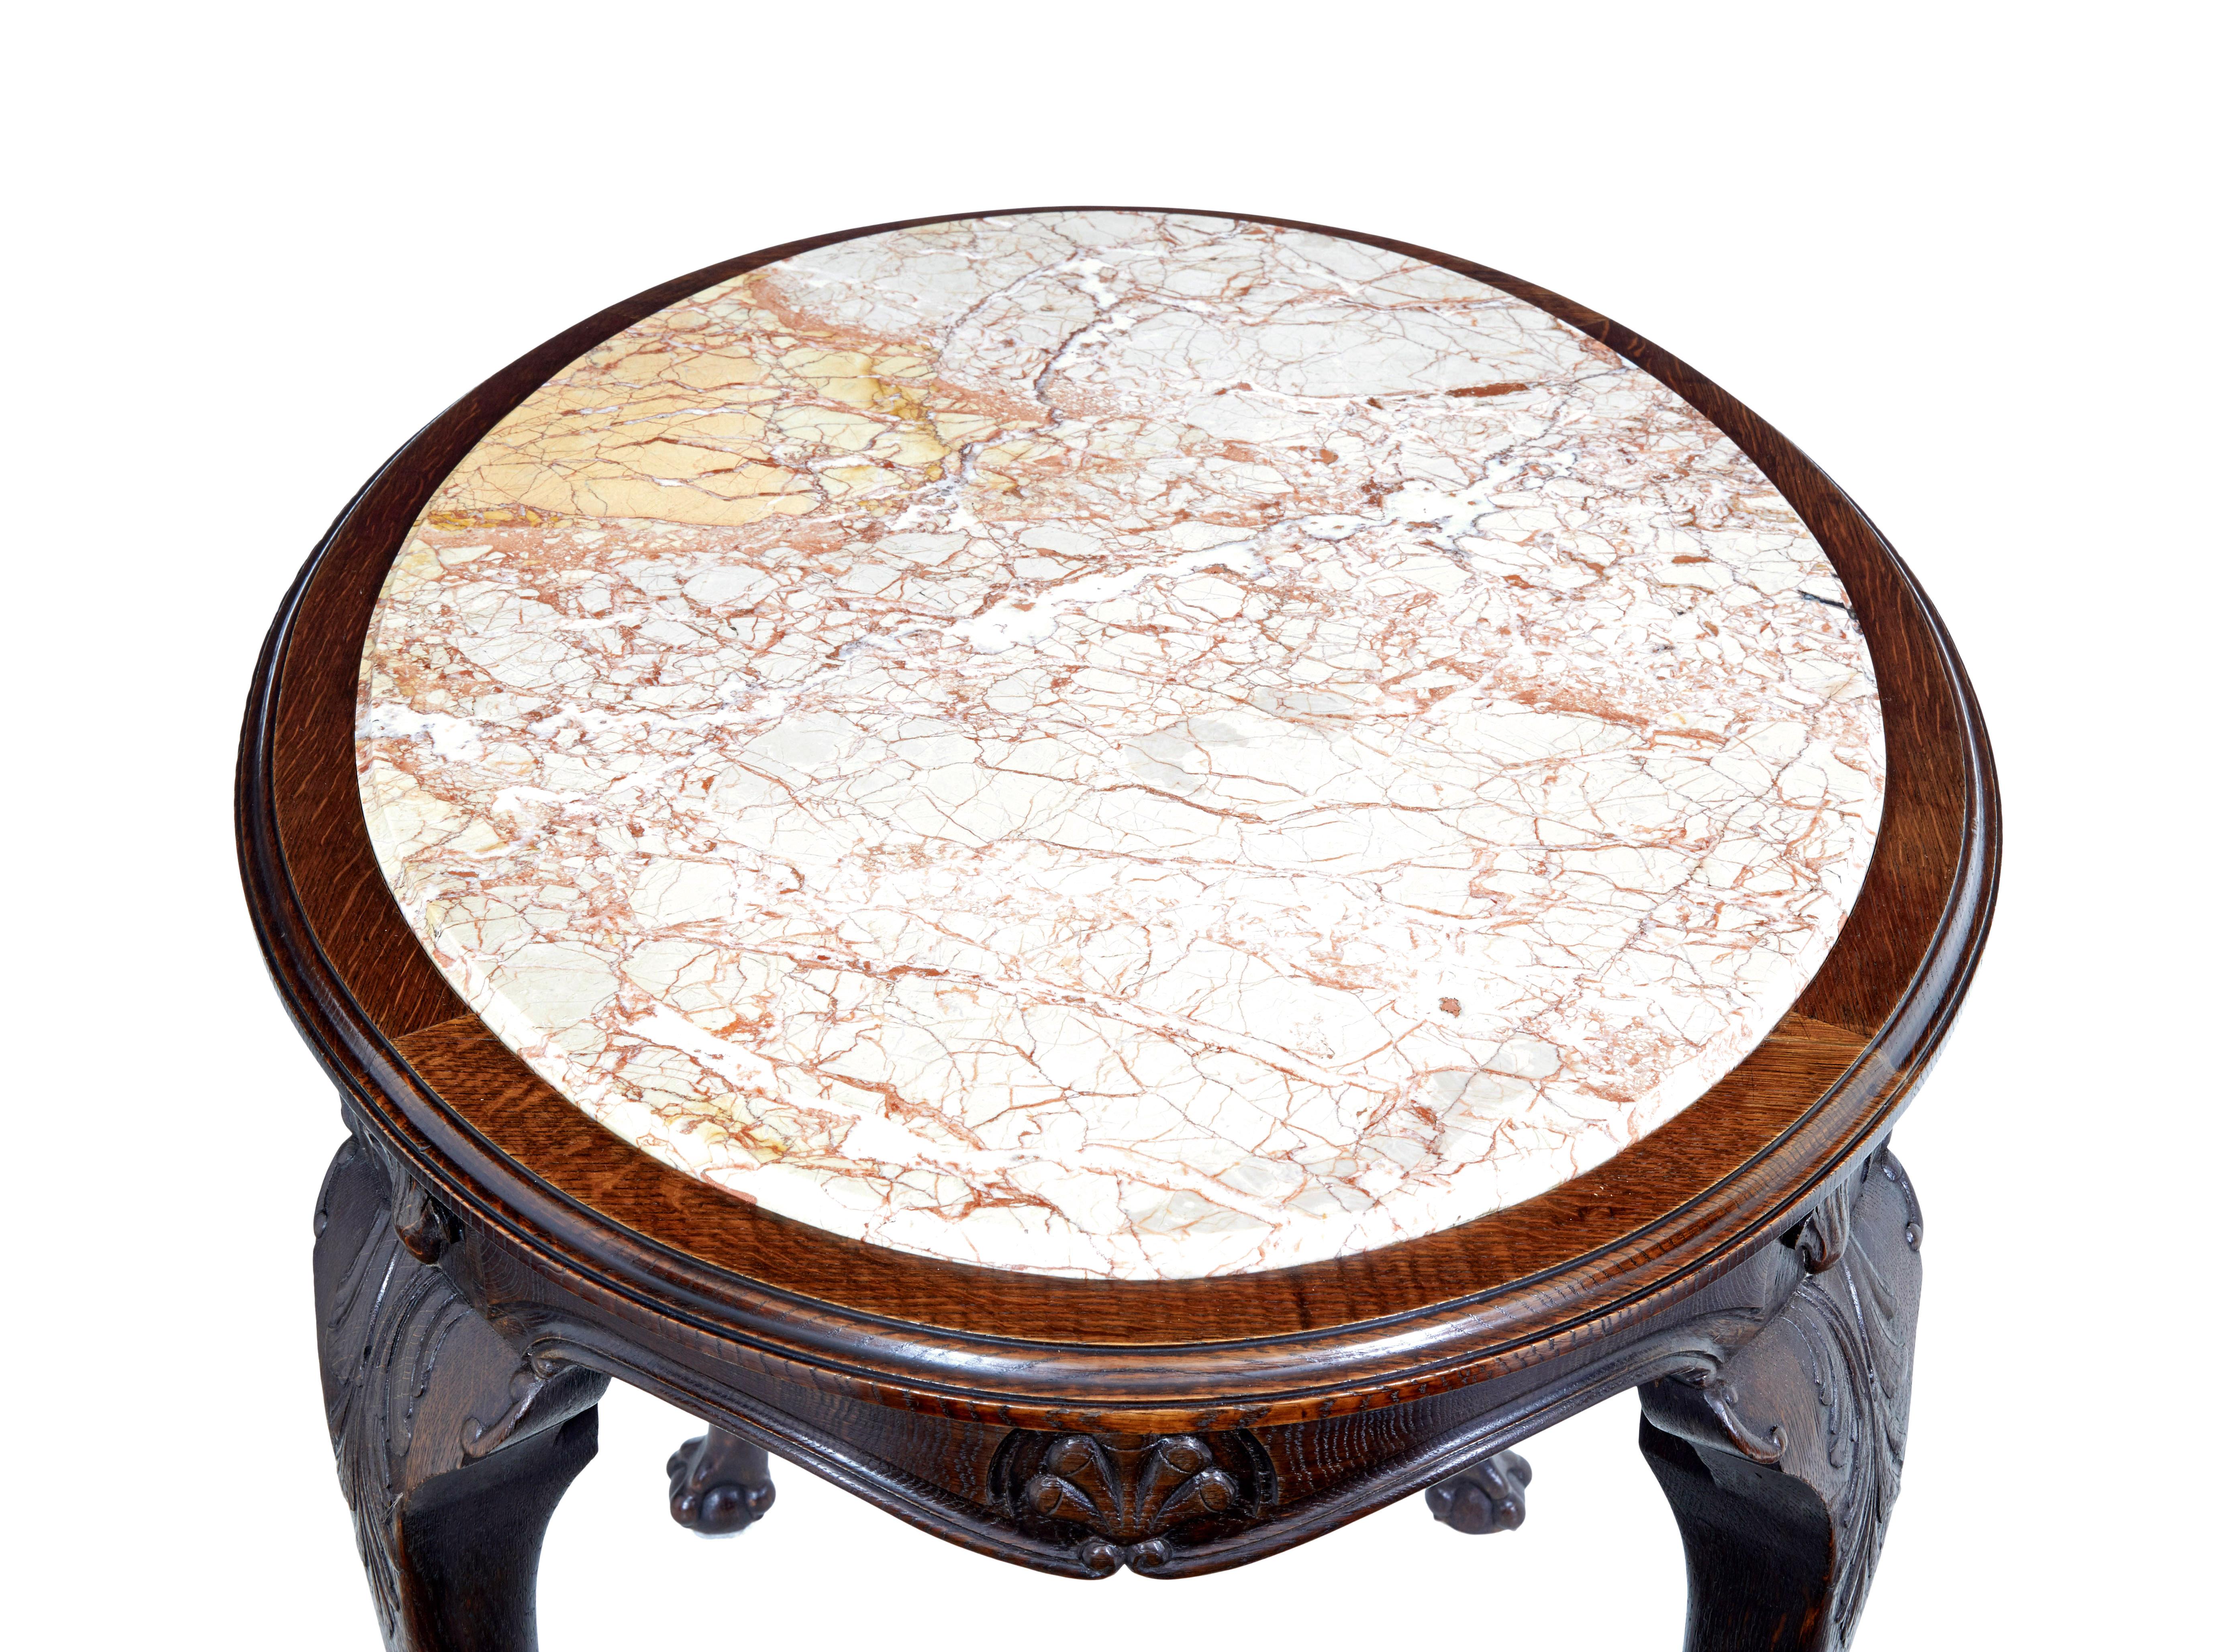 Art Nouveau 19th century French art nouveau oak marble top table For Sale